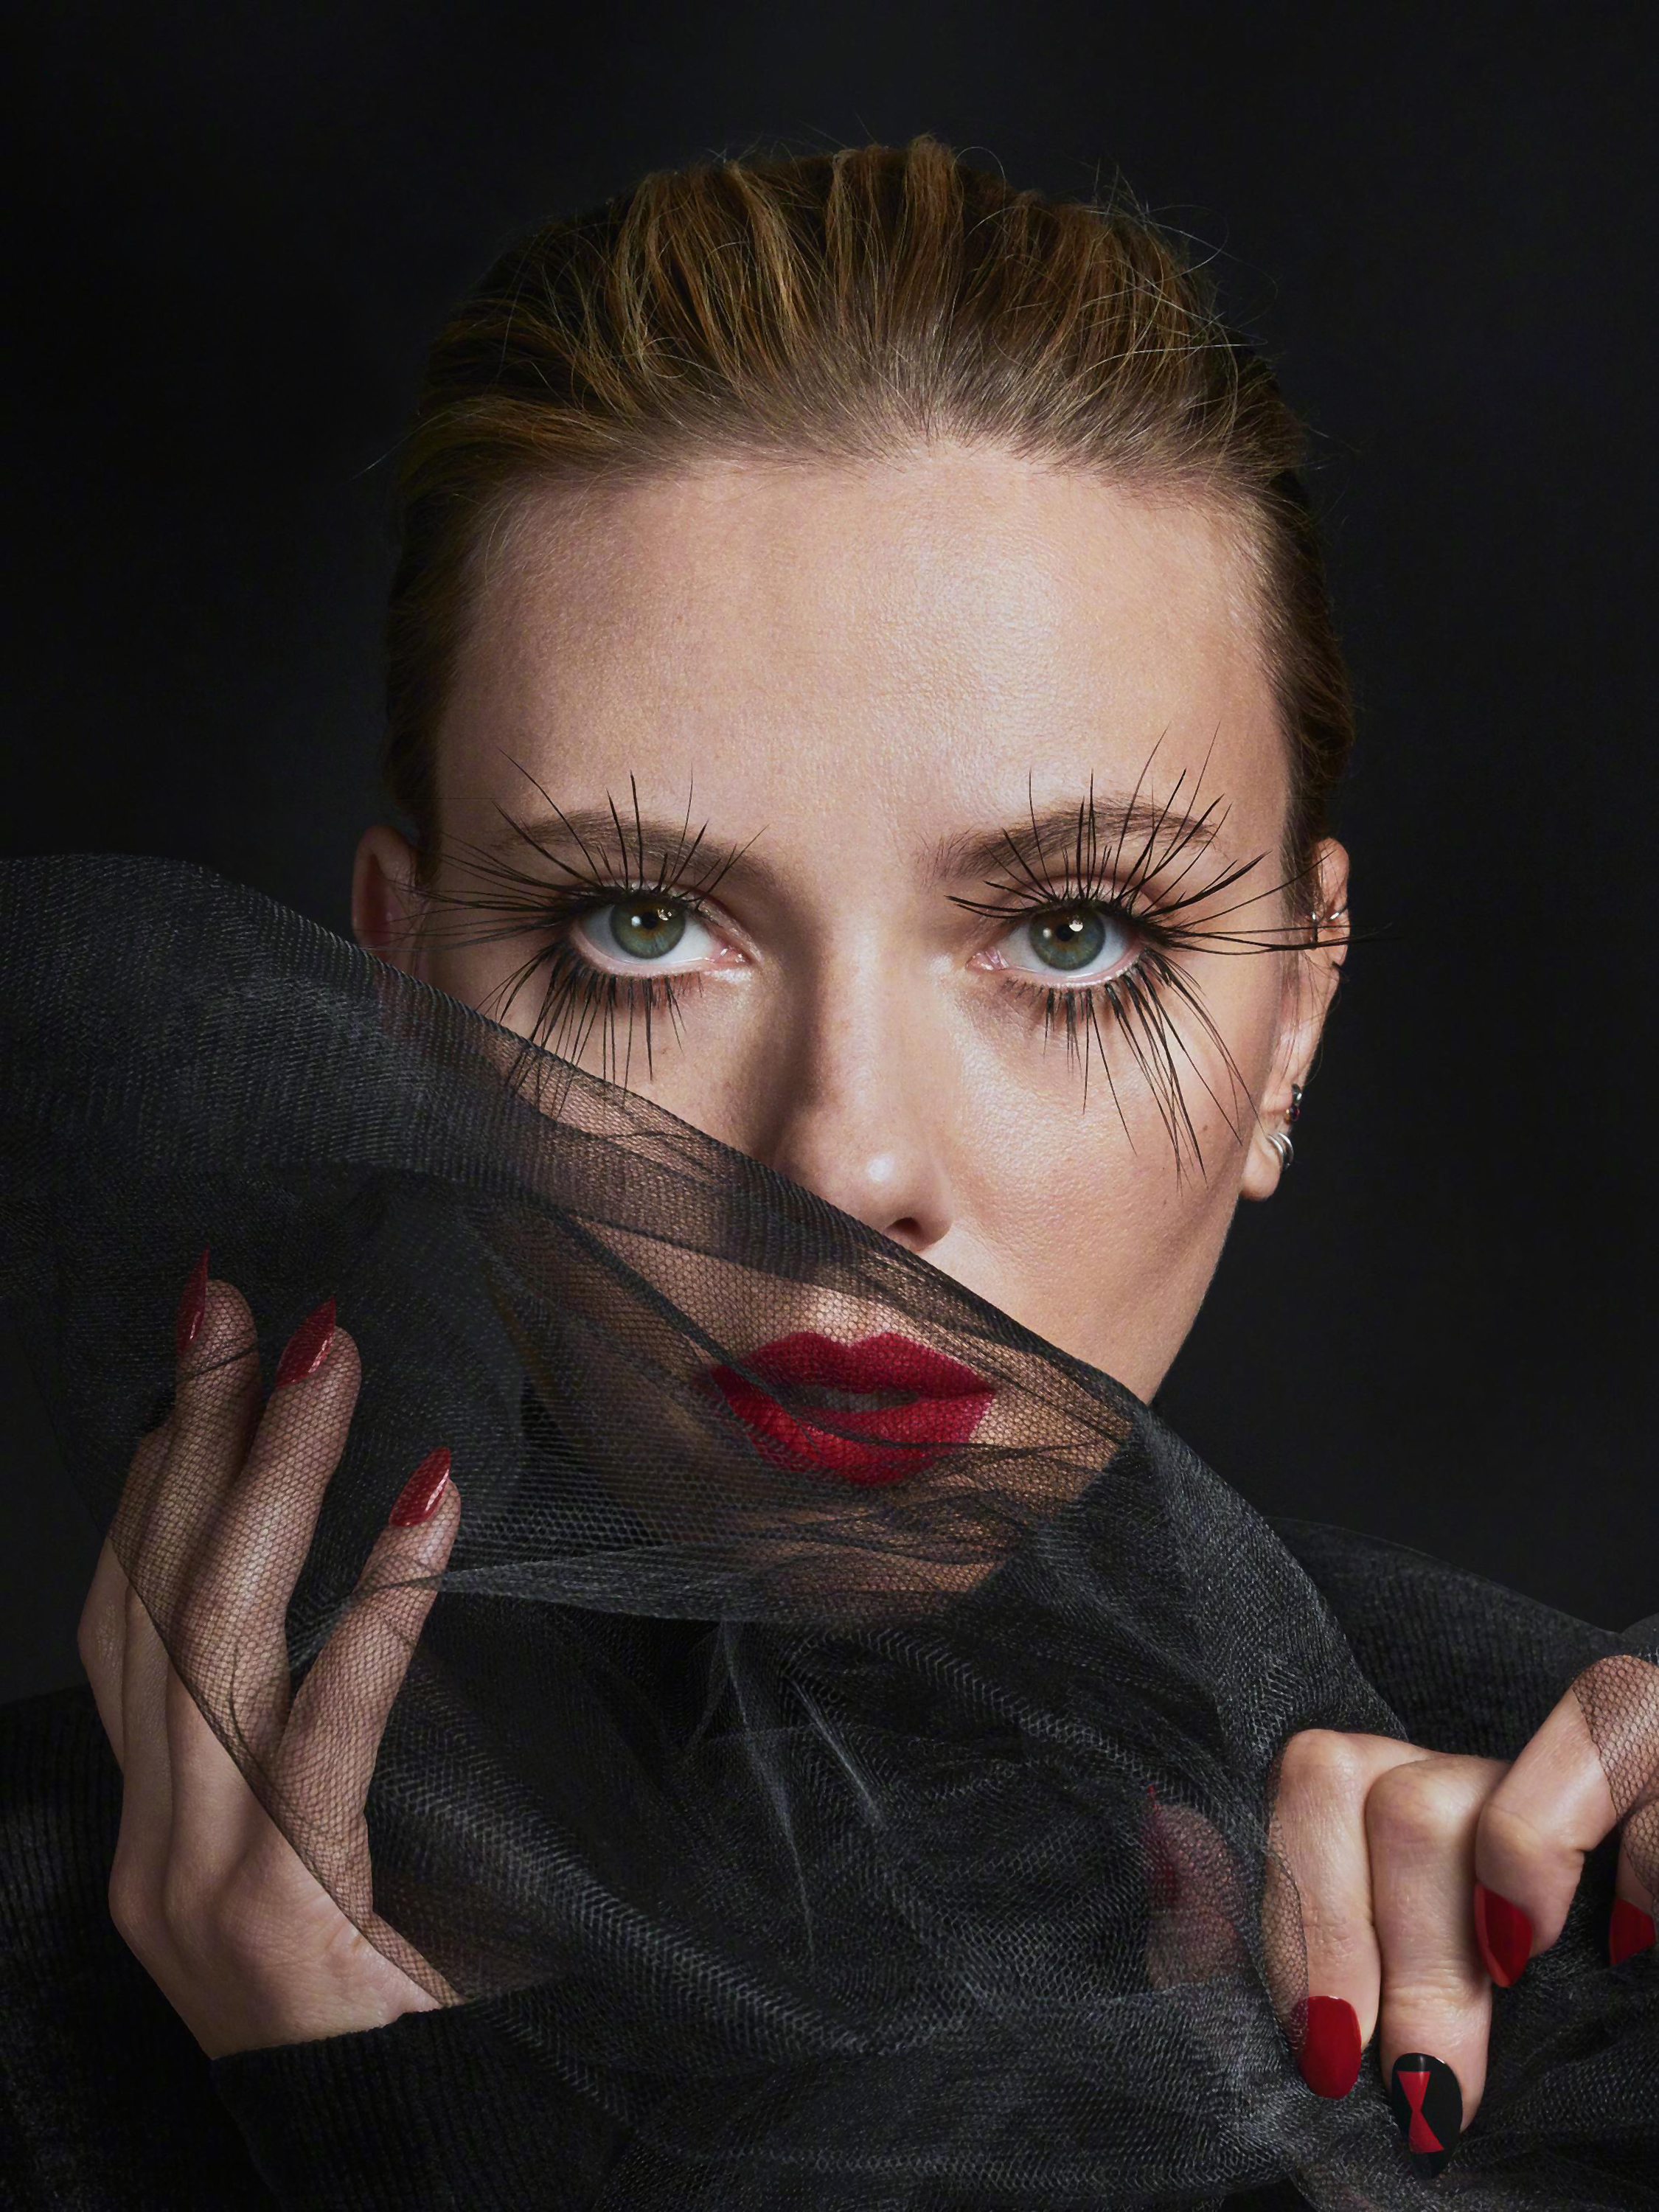 Scarlett Johansson Black Widow Photoshoot Wallpaper Hd Celebrities 4k 